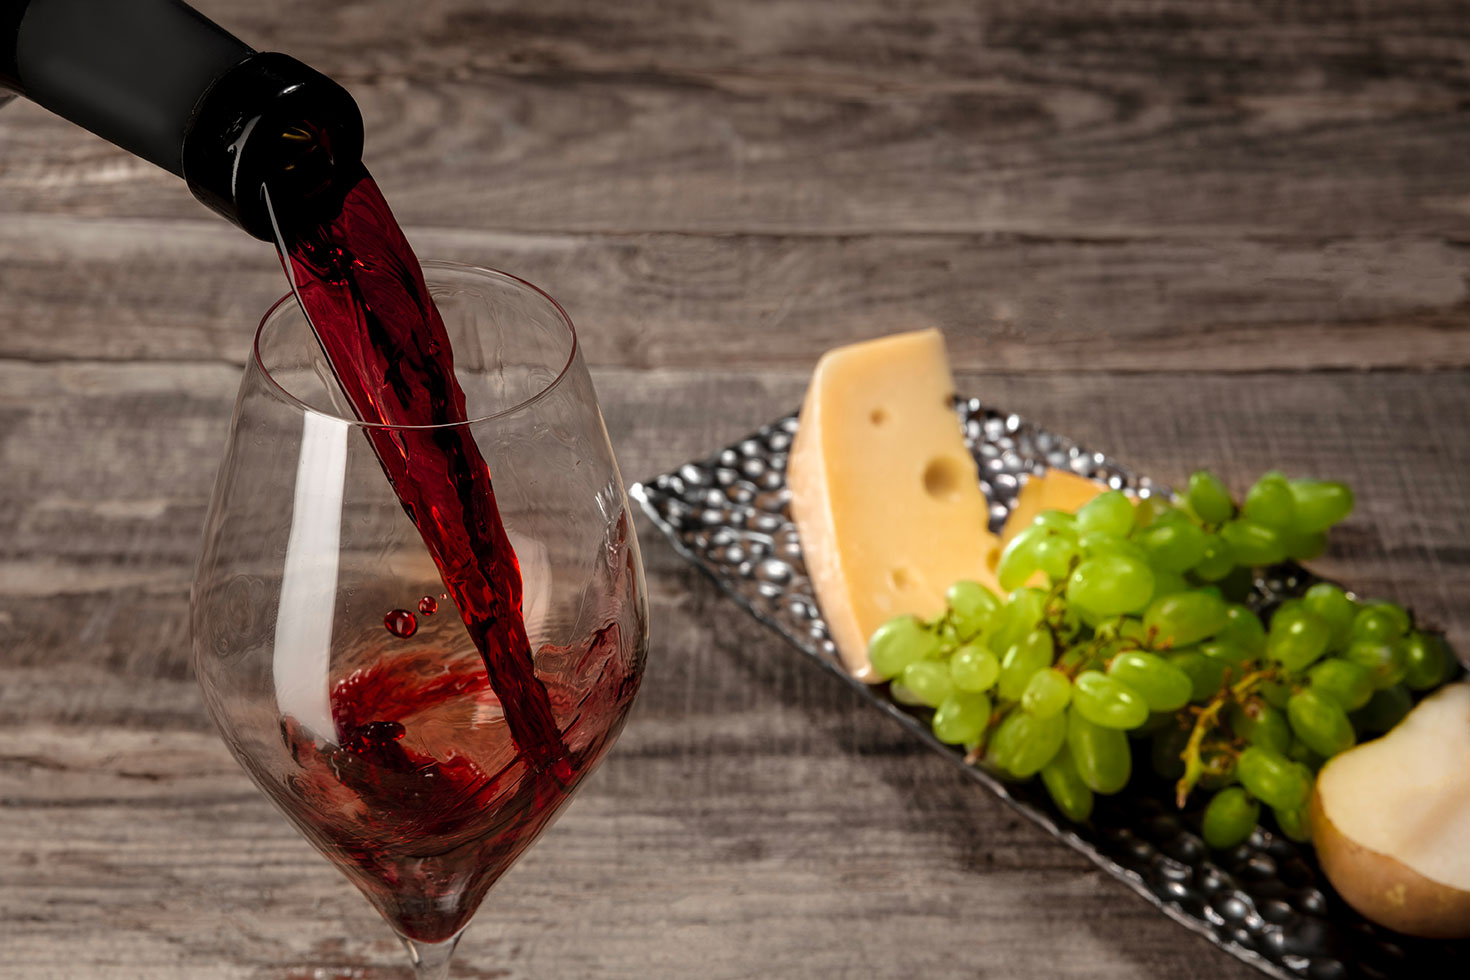 Les 5 meilleurs vins rouge sans alcool - Zéro alcool